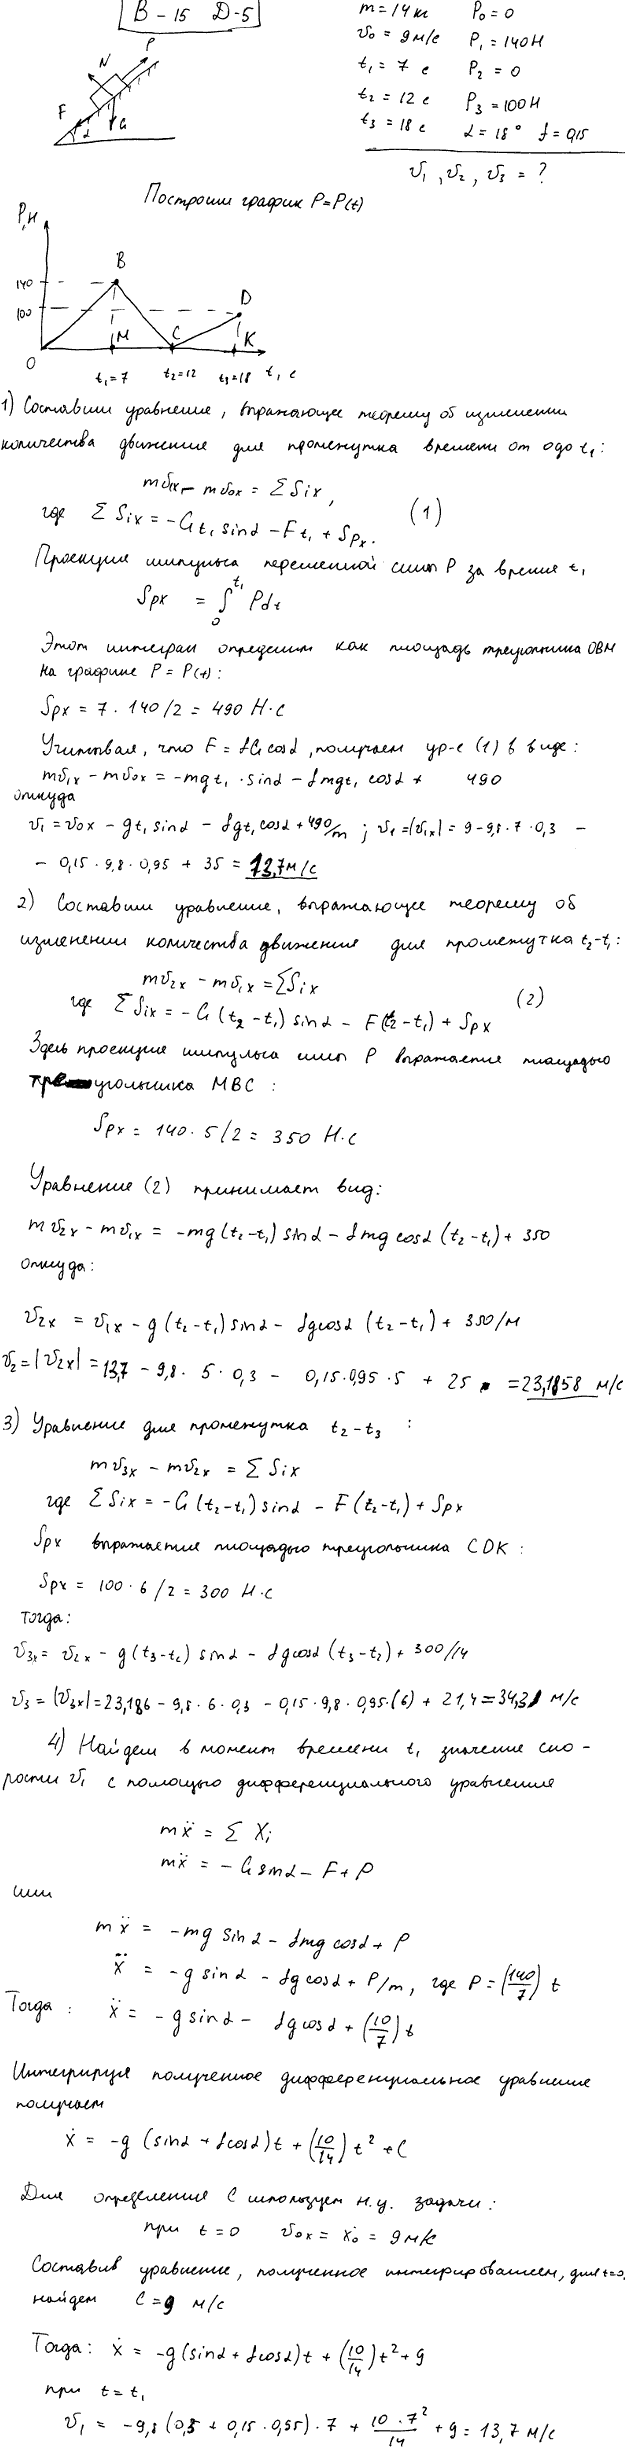 Задание Д.5 вариант 15. m=14 кг; v0=9,0 м/с; t1=7 с; t2=12 с; t3=18 с; P0=0 Н; P1=140 Н; P2=0 Н; P3=100 Н; α=18 град; f=0,15